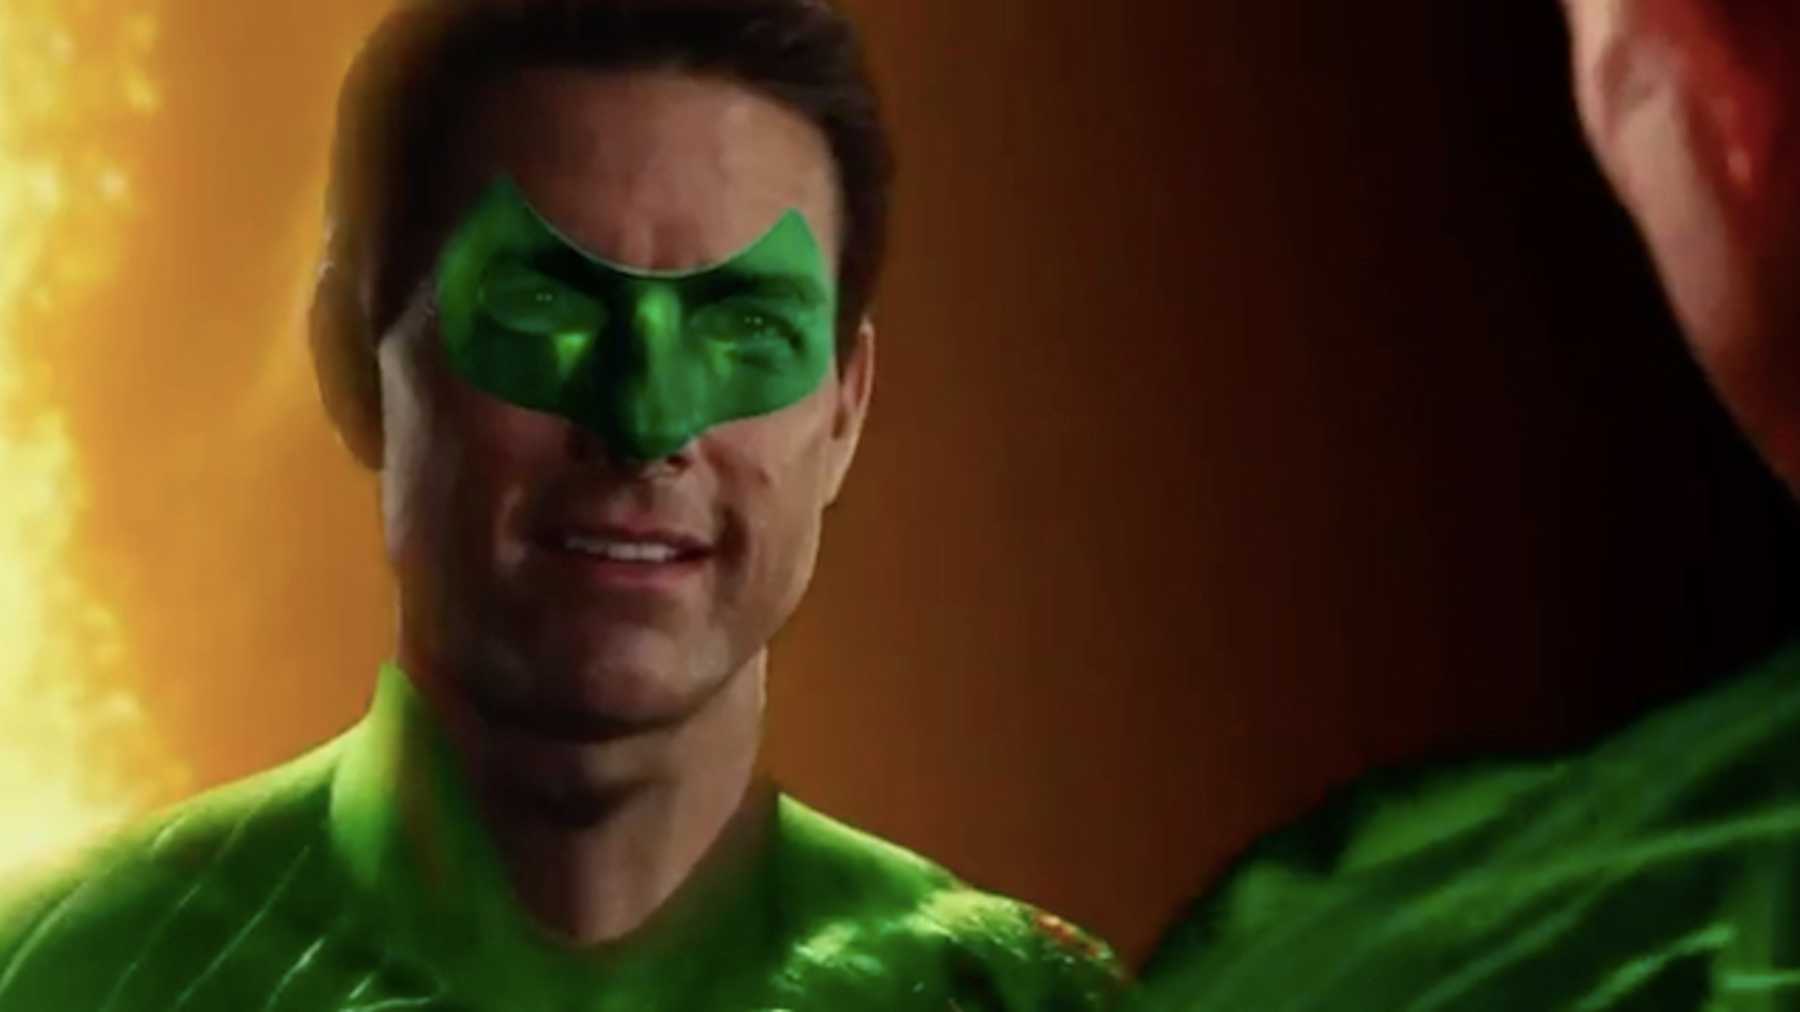 Tom Cruise als Green Lantern im Reynold's Spoof - Cut